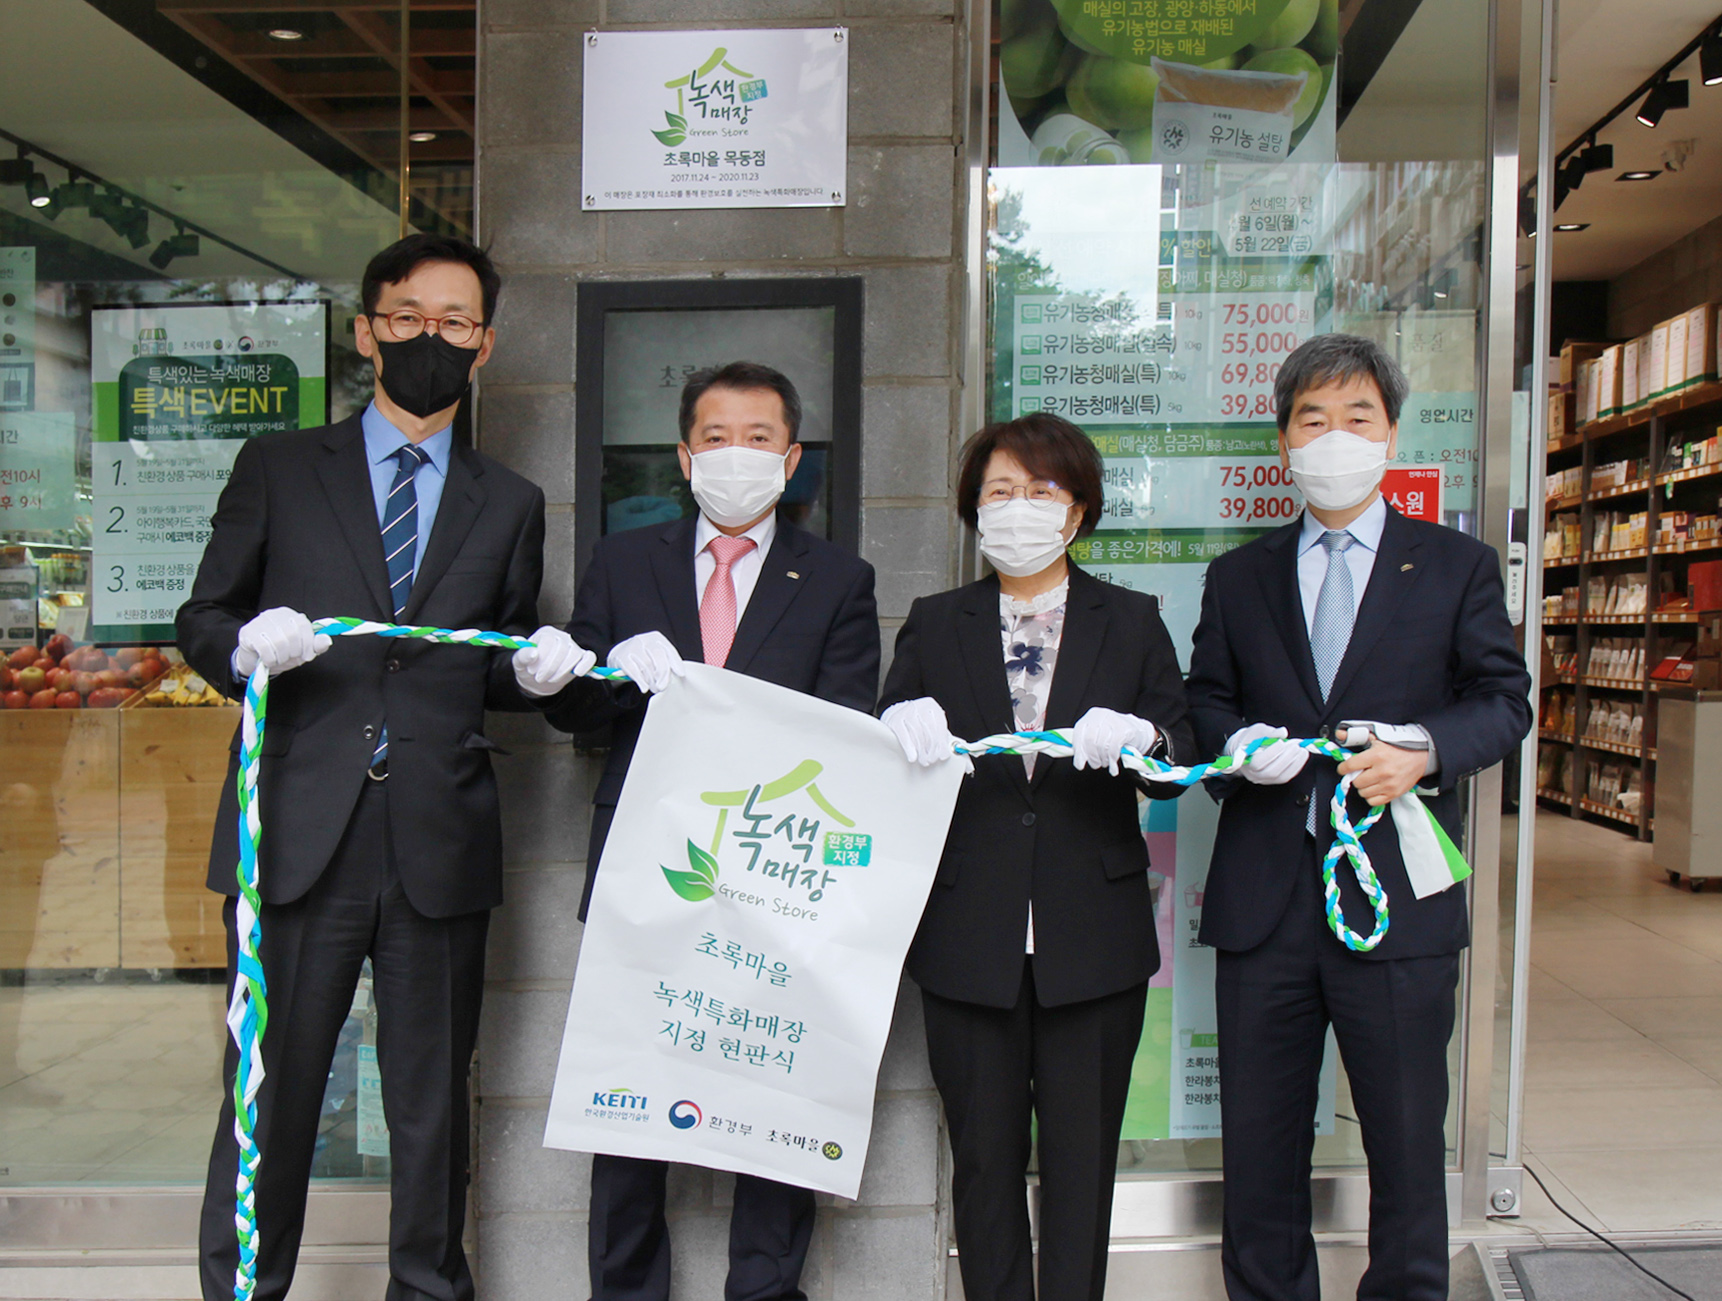 한국환경산업기술원(원장 유제철)은 생활 속에서 플라스틱 포장재 사용을 줄이기 위한 녹색특화매장을 시범 운영한다. /사진제공=한국환경산업기술원